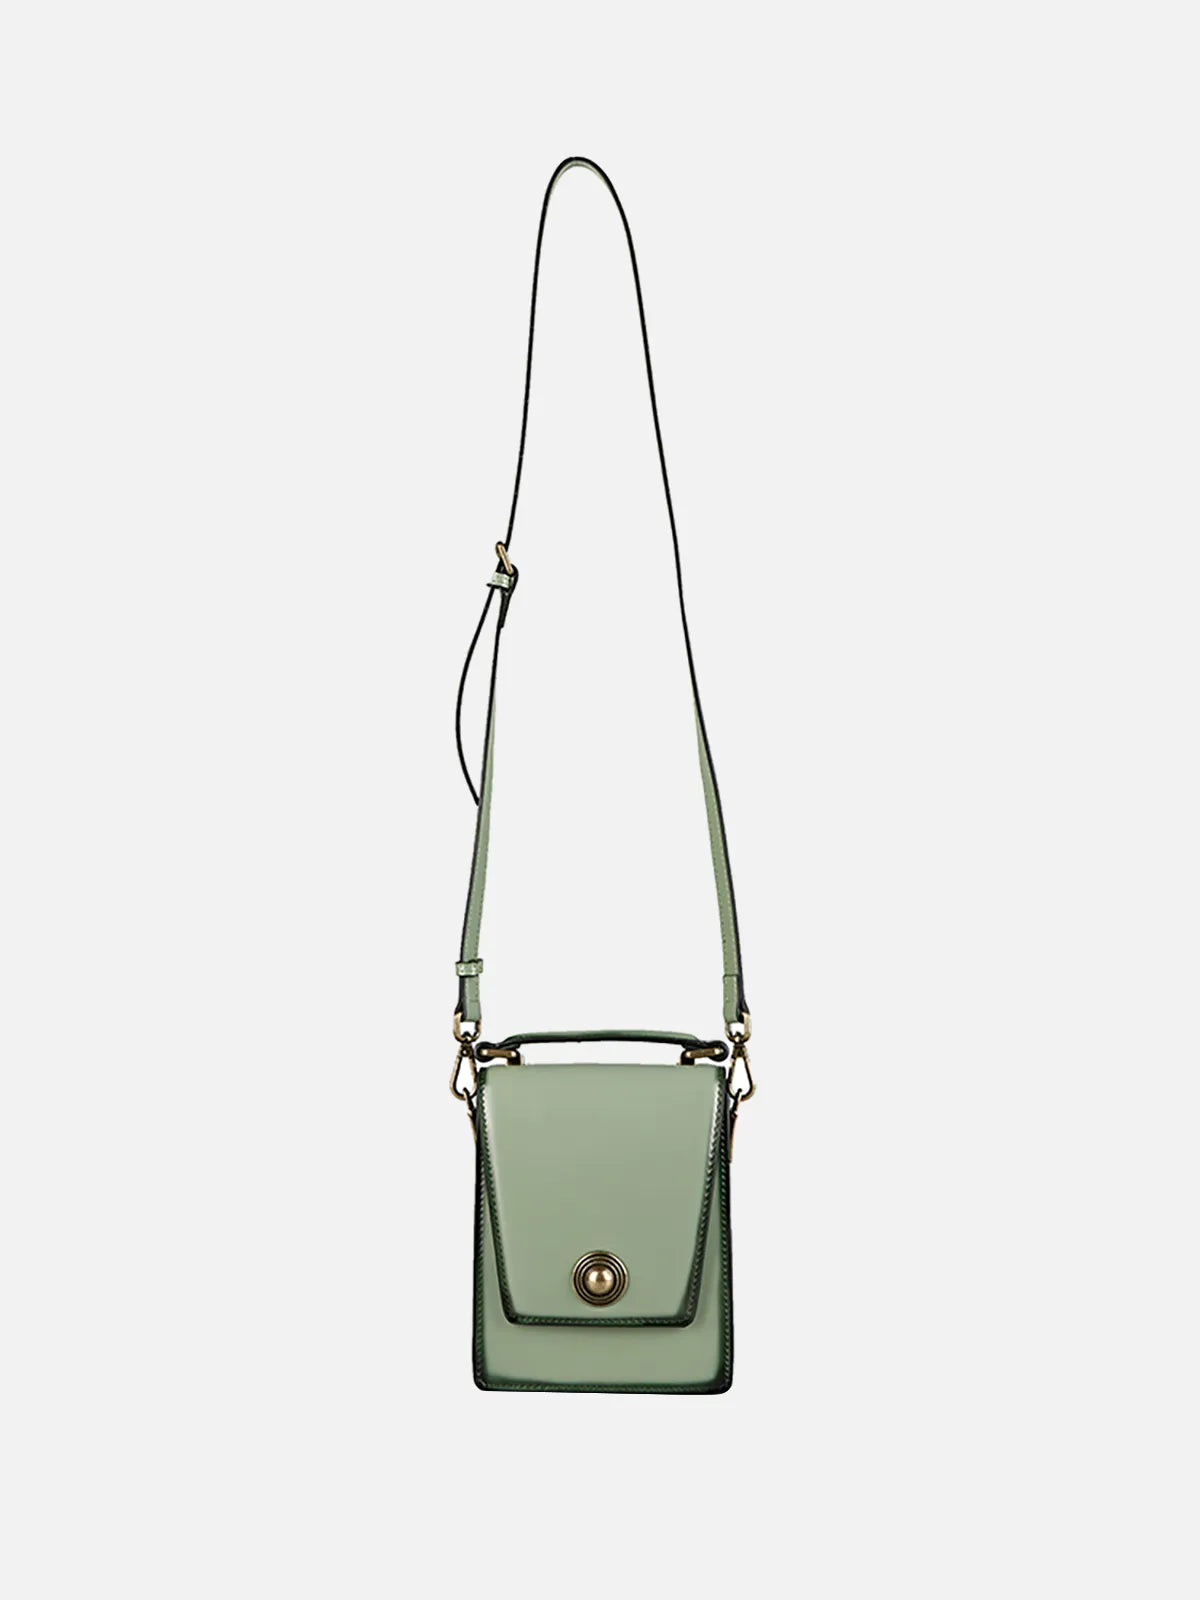 Vintage Oblique Straddle Fashion One Shoulder Mini Bag